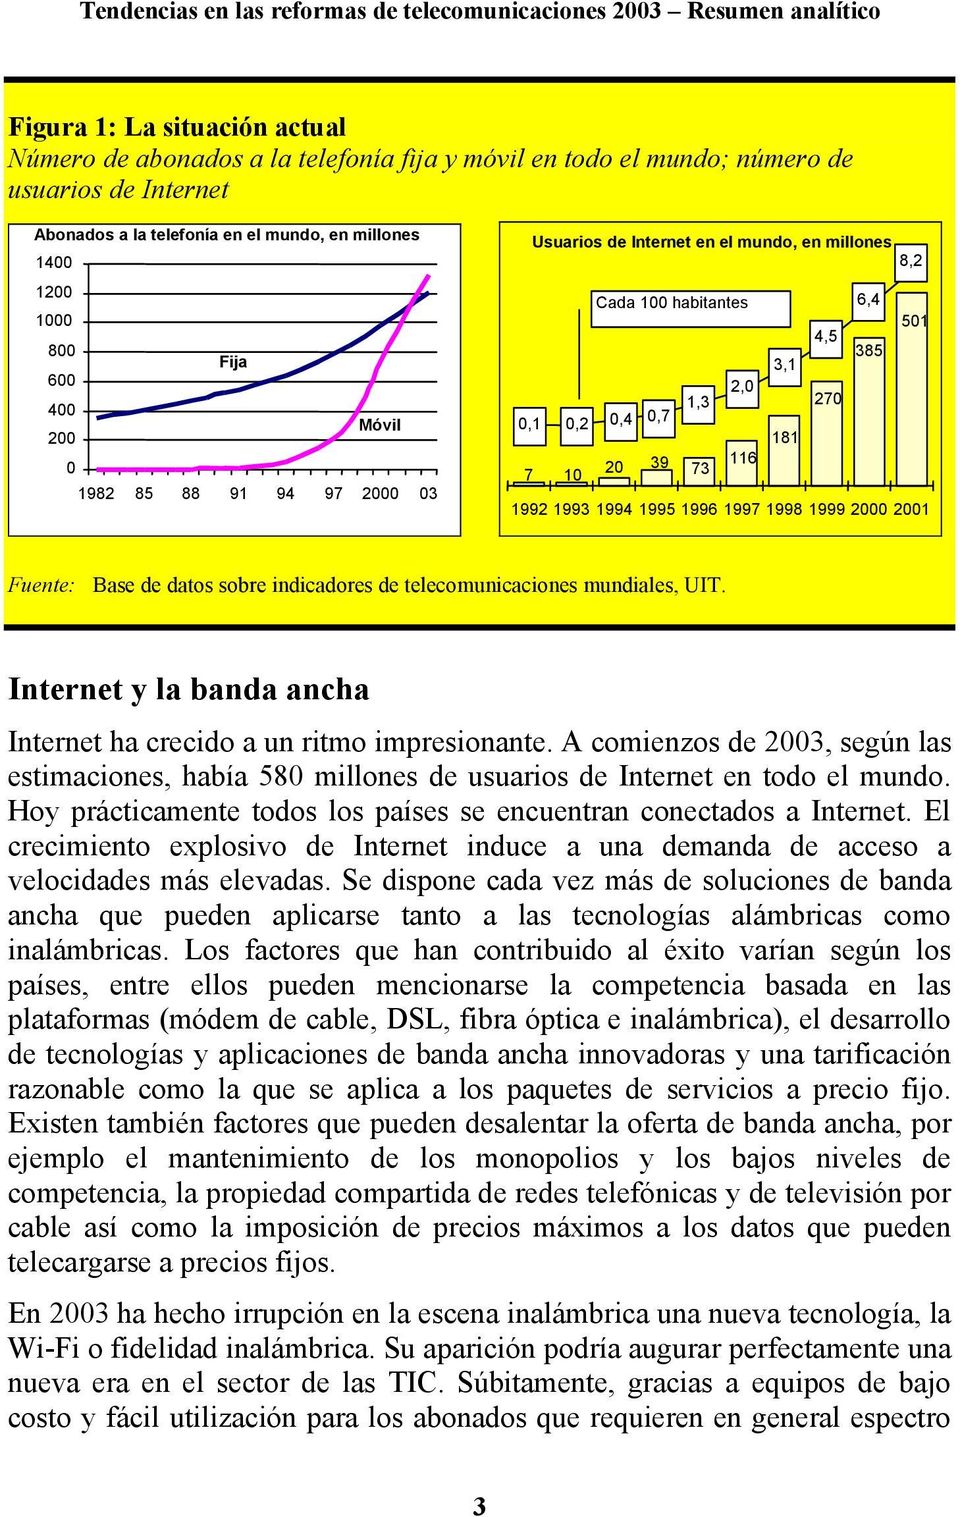 1994 1995 1996 1997 1998 1999 2000 2001 Fuente: Base de datos sobre indicadores de telecomunicaciones mundiales, UIT. Internet y la banda ancha Internet ha crecido a un ritmo impresionante.